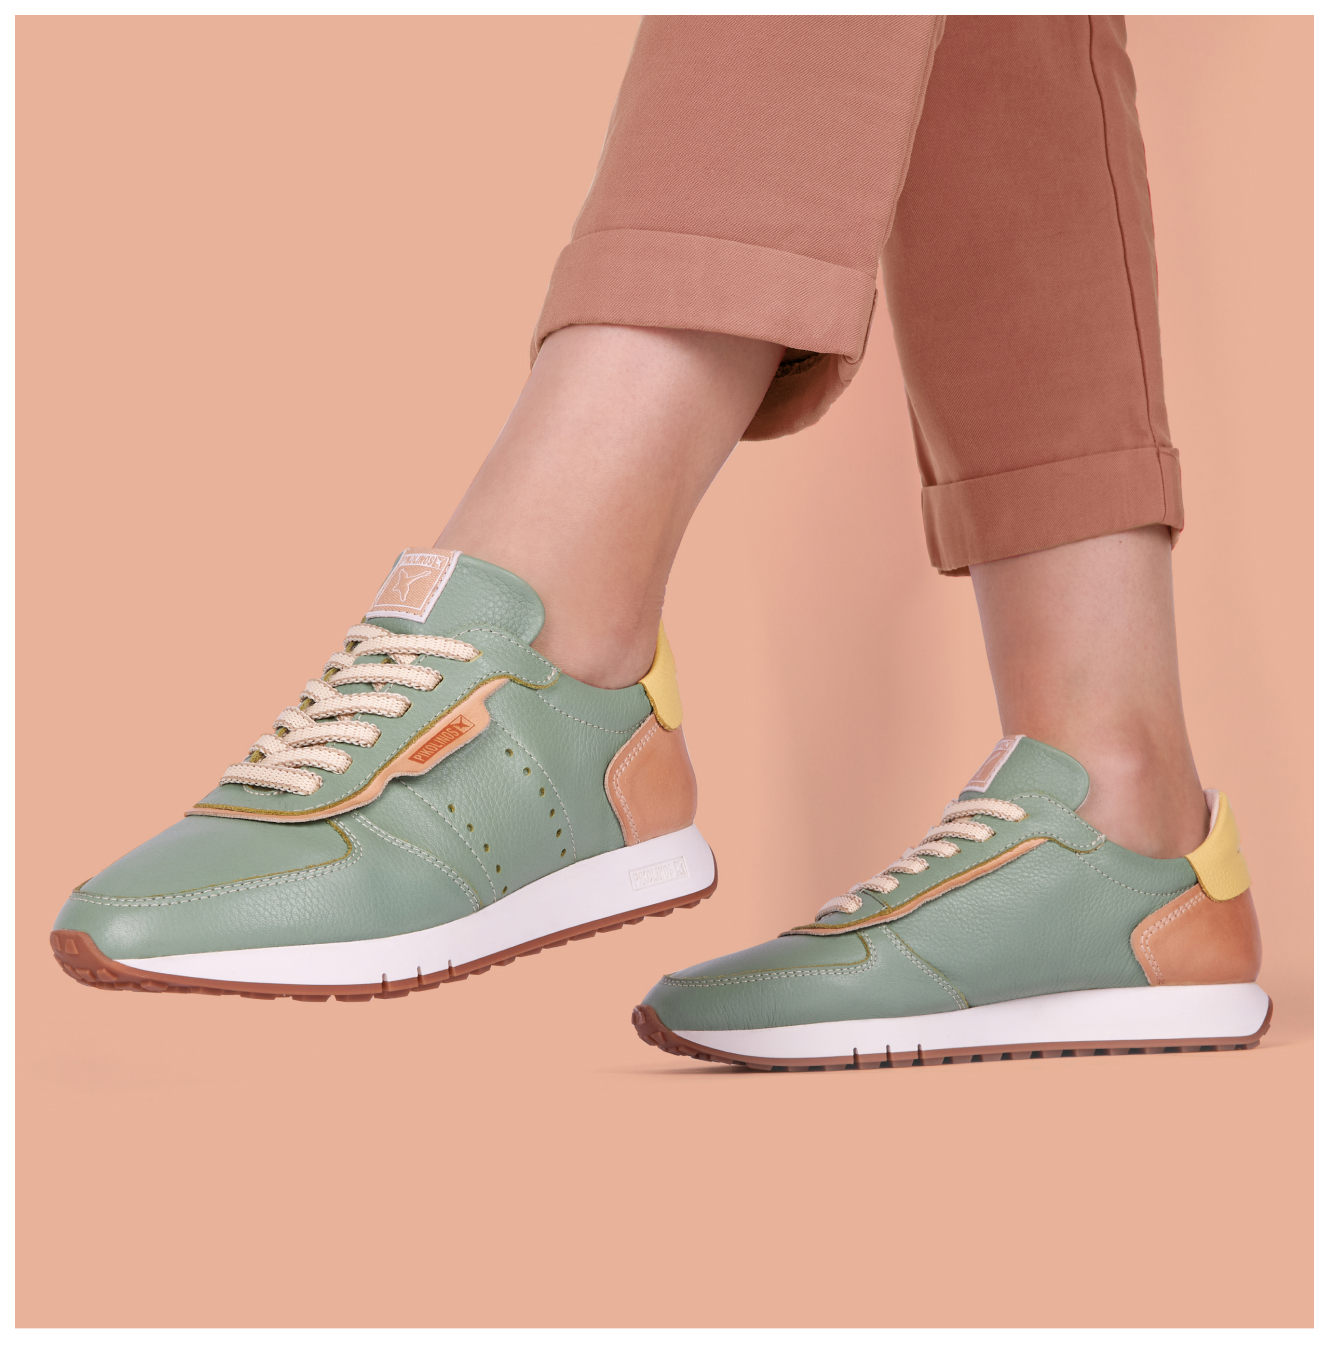 Women's green sneakers on an orange background